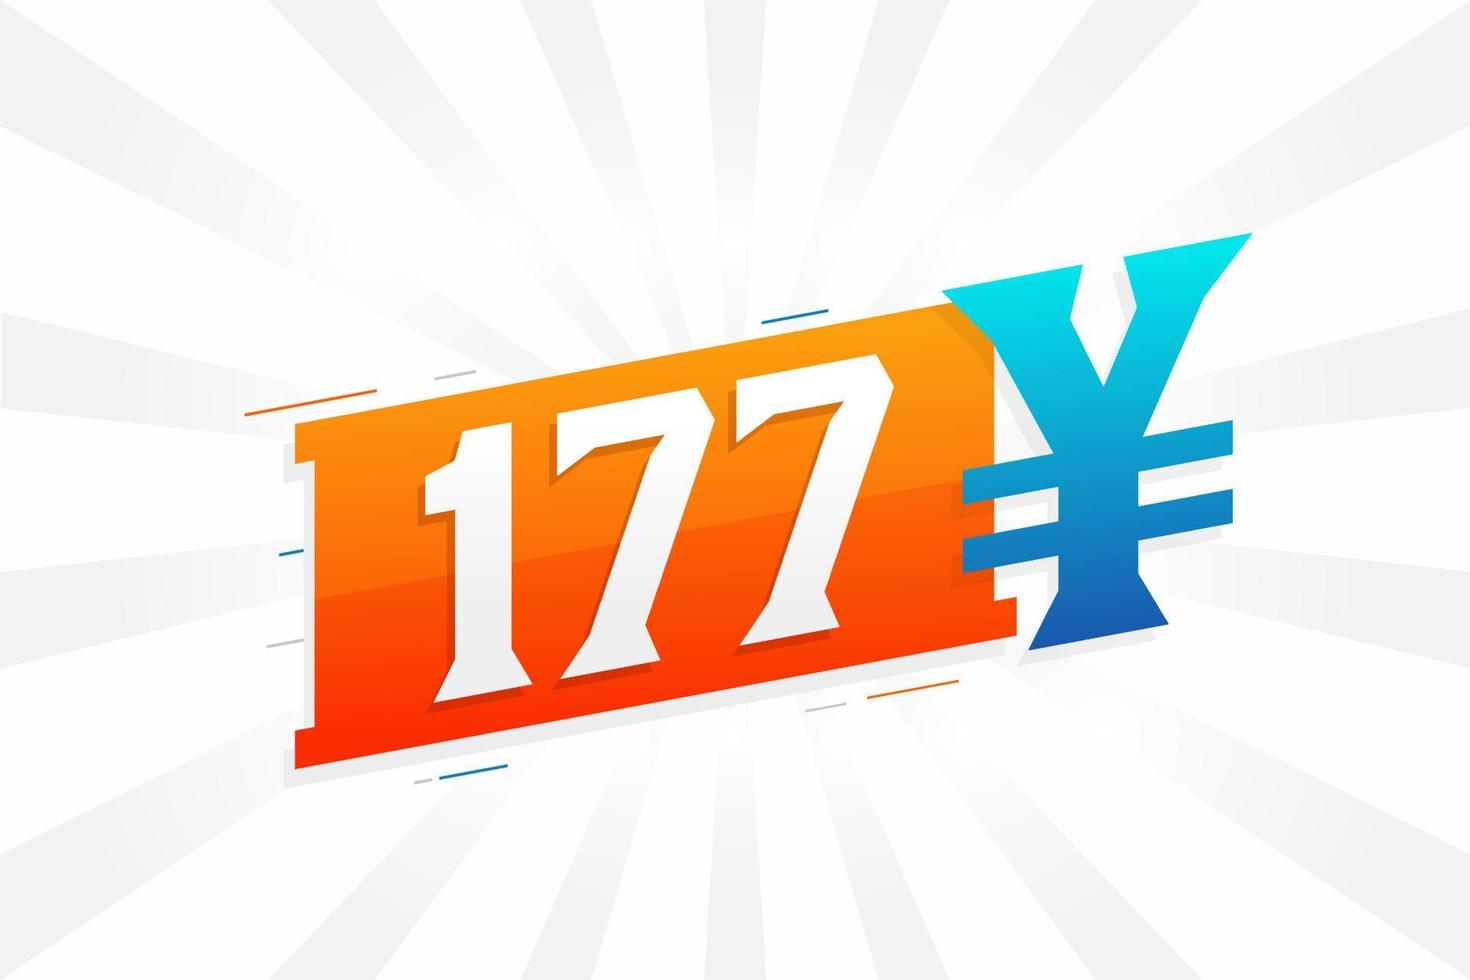 177 yuan symbole de texte vectoriel de devise chinoise. 177 yen monnaie japonaise vecteur de stock d'argent